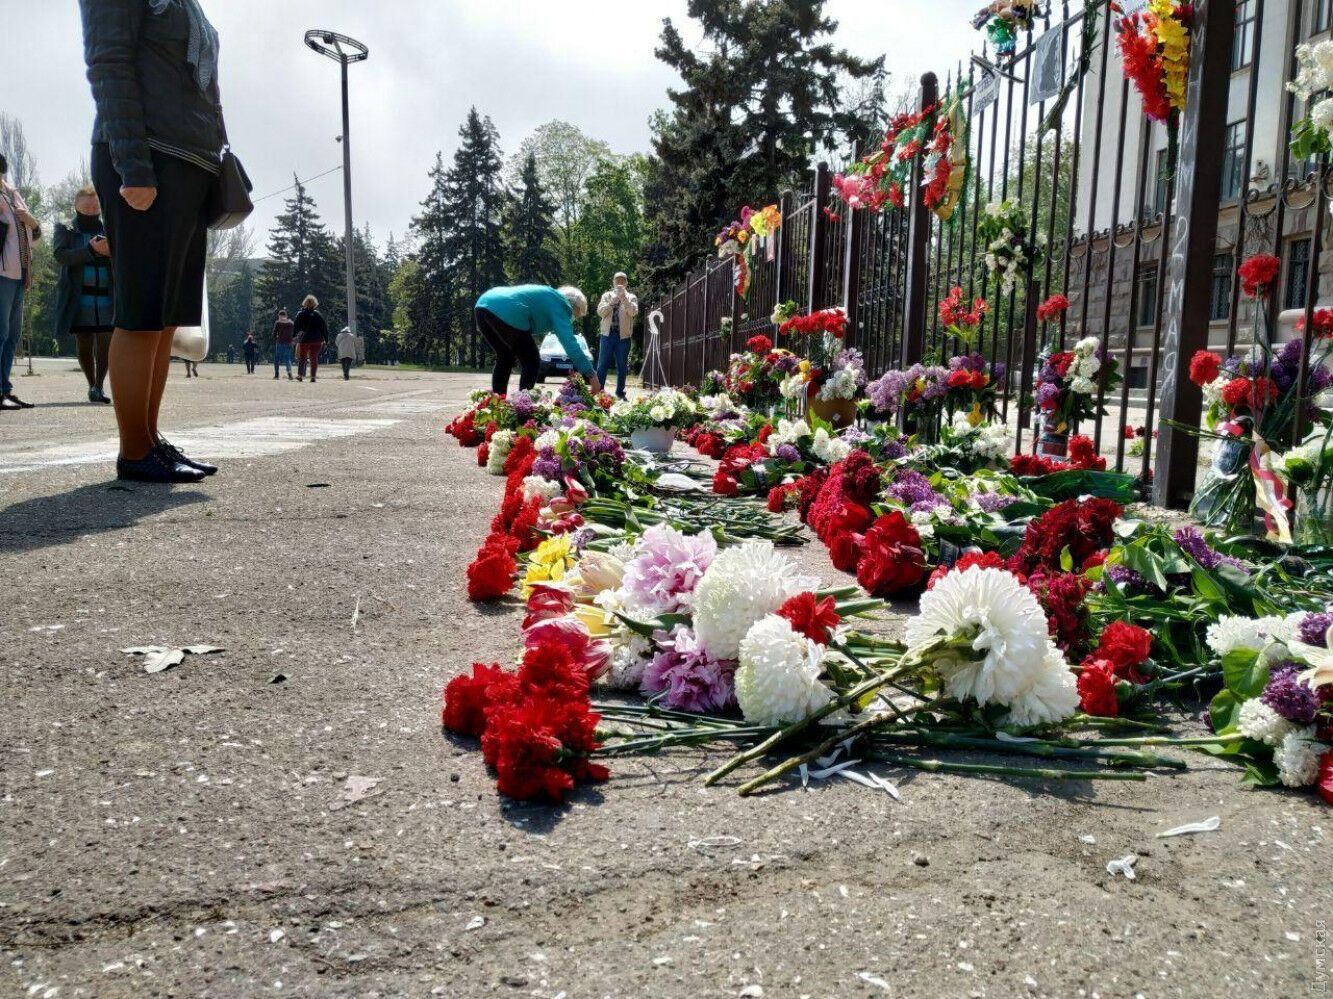 Роковини трагедії 2 травня в Одесі: як це було. Всі подробиці